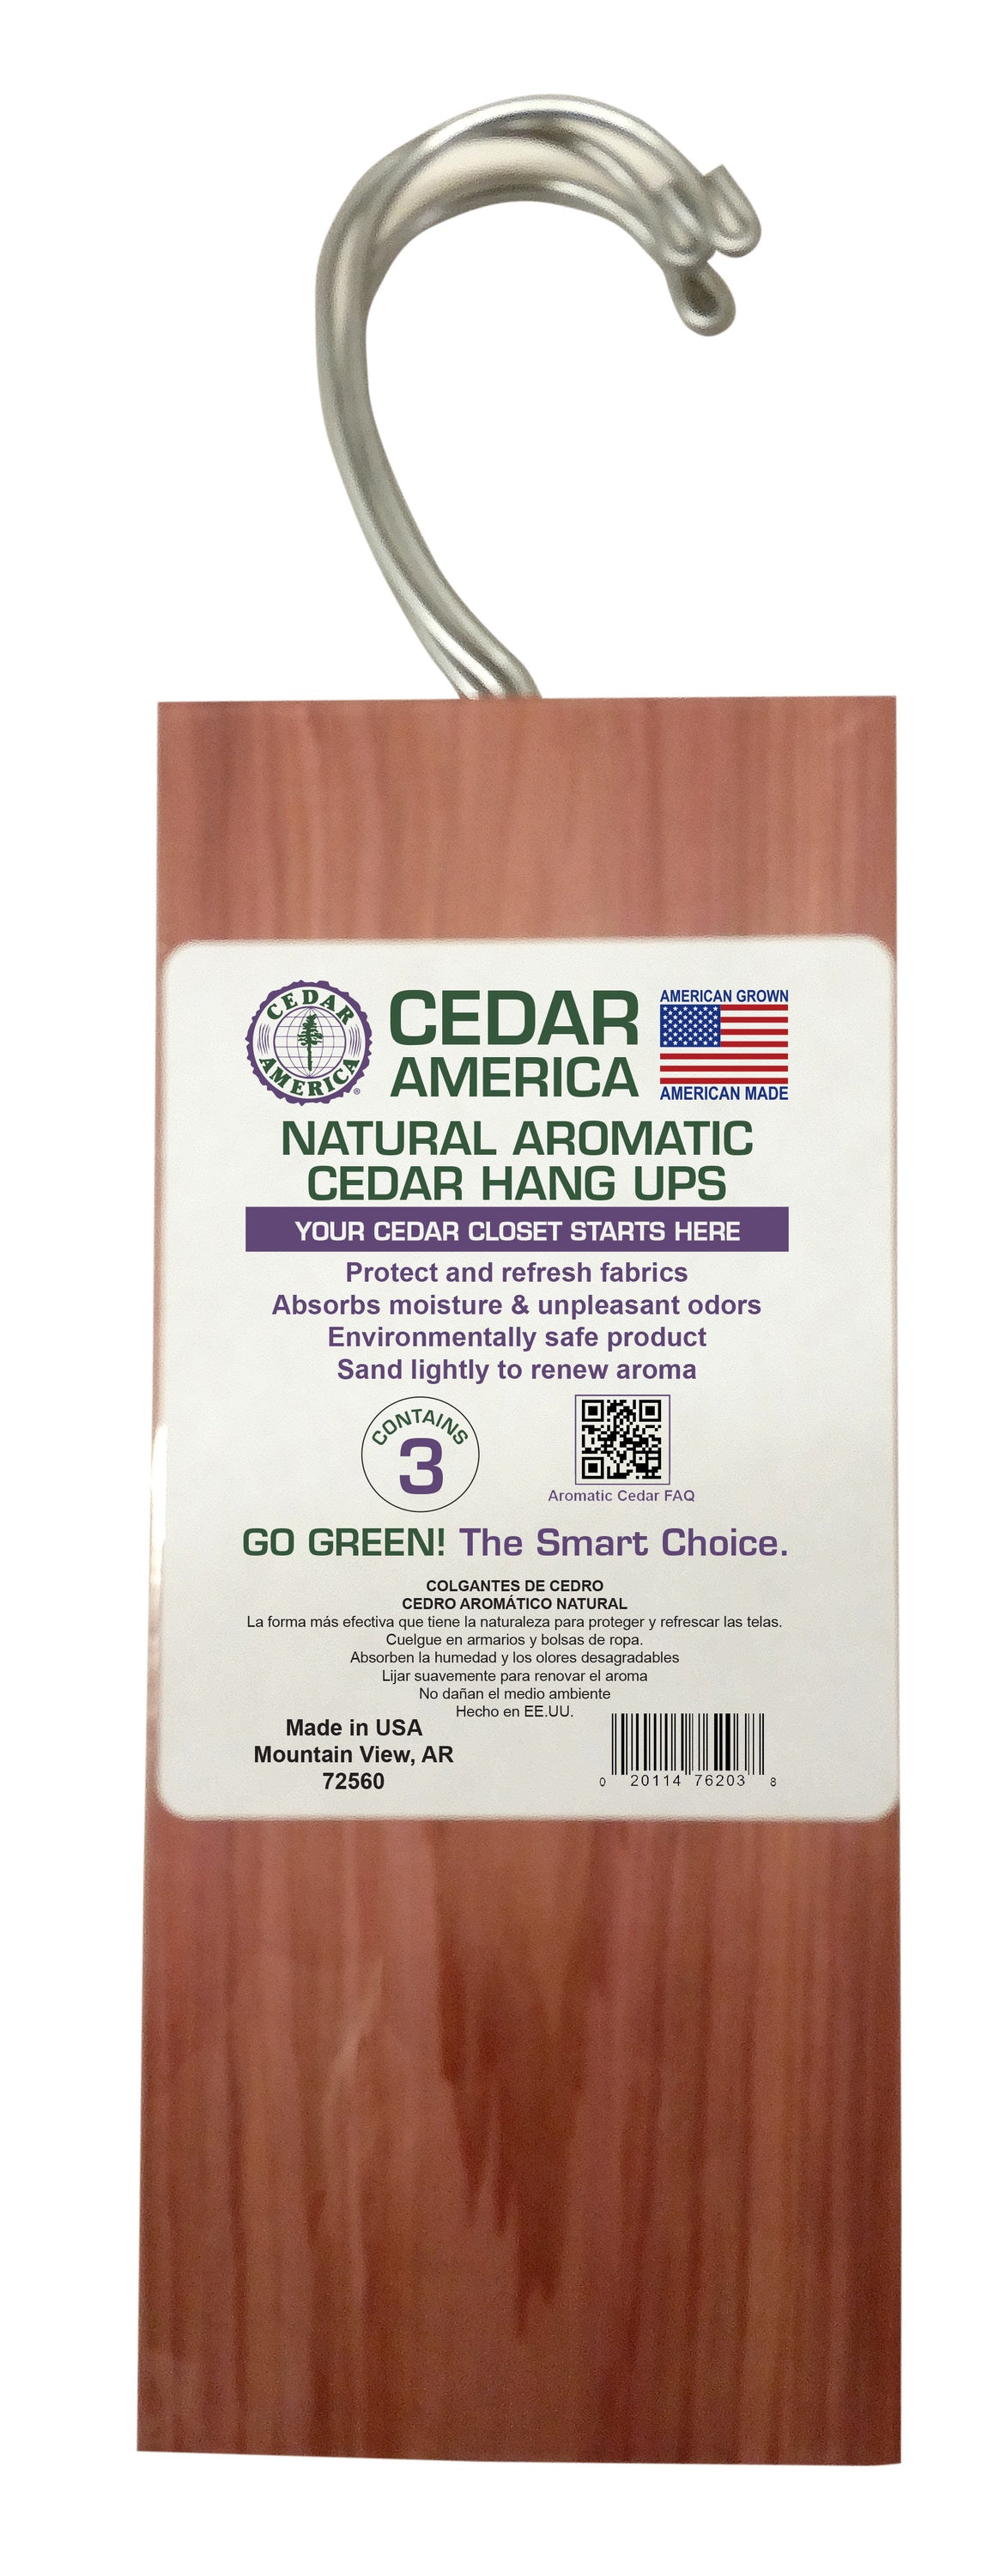 Cedar Planks | Non-Toxic Clothes Moth Repellent